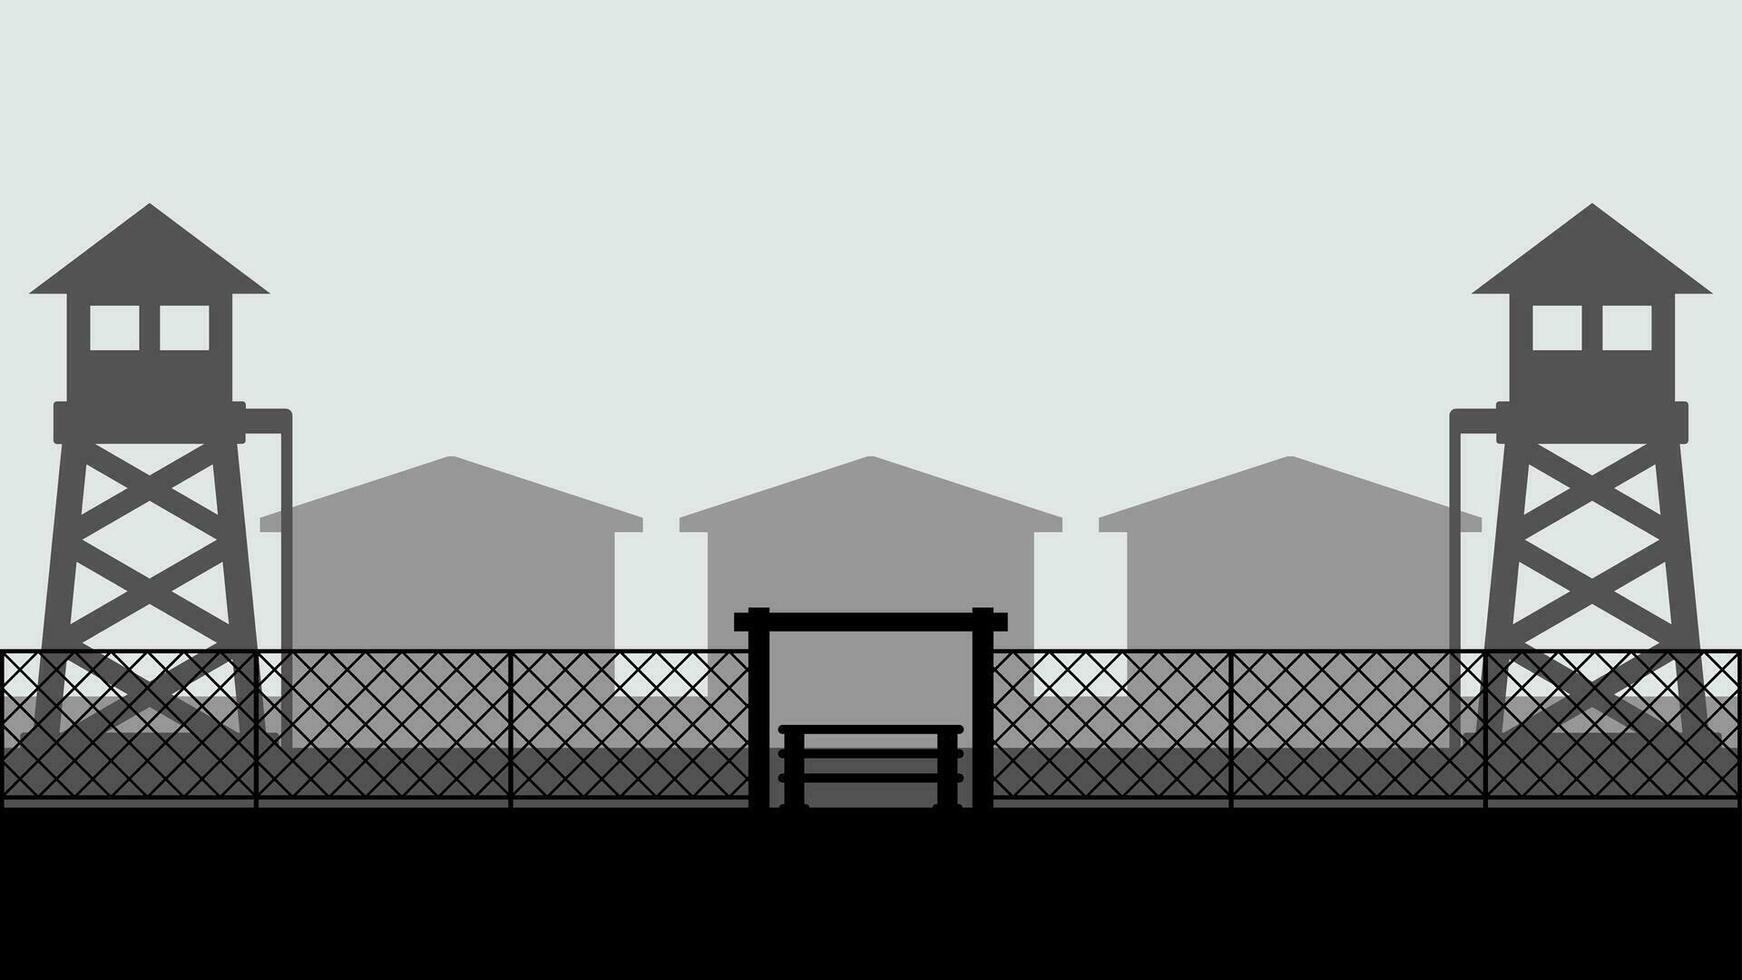 Militär- Base Landschaft Vektor Illustration. Silhouette von Militär- Base Tor mit Wachturm und Kaserne. Militär- Landschaft zum Hintergrund, Hintergrund oder Landung Seite